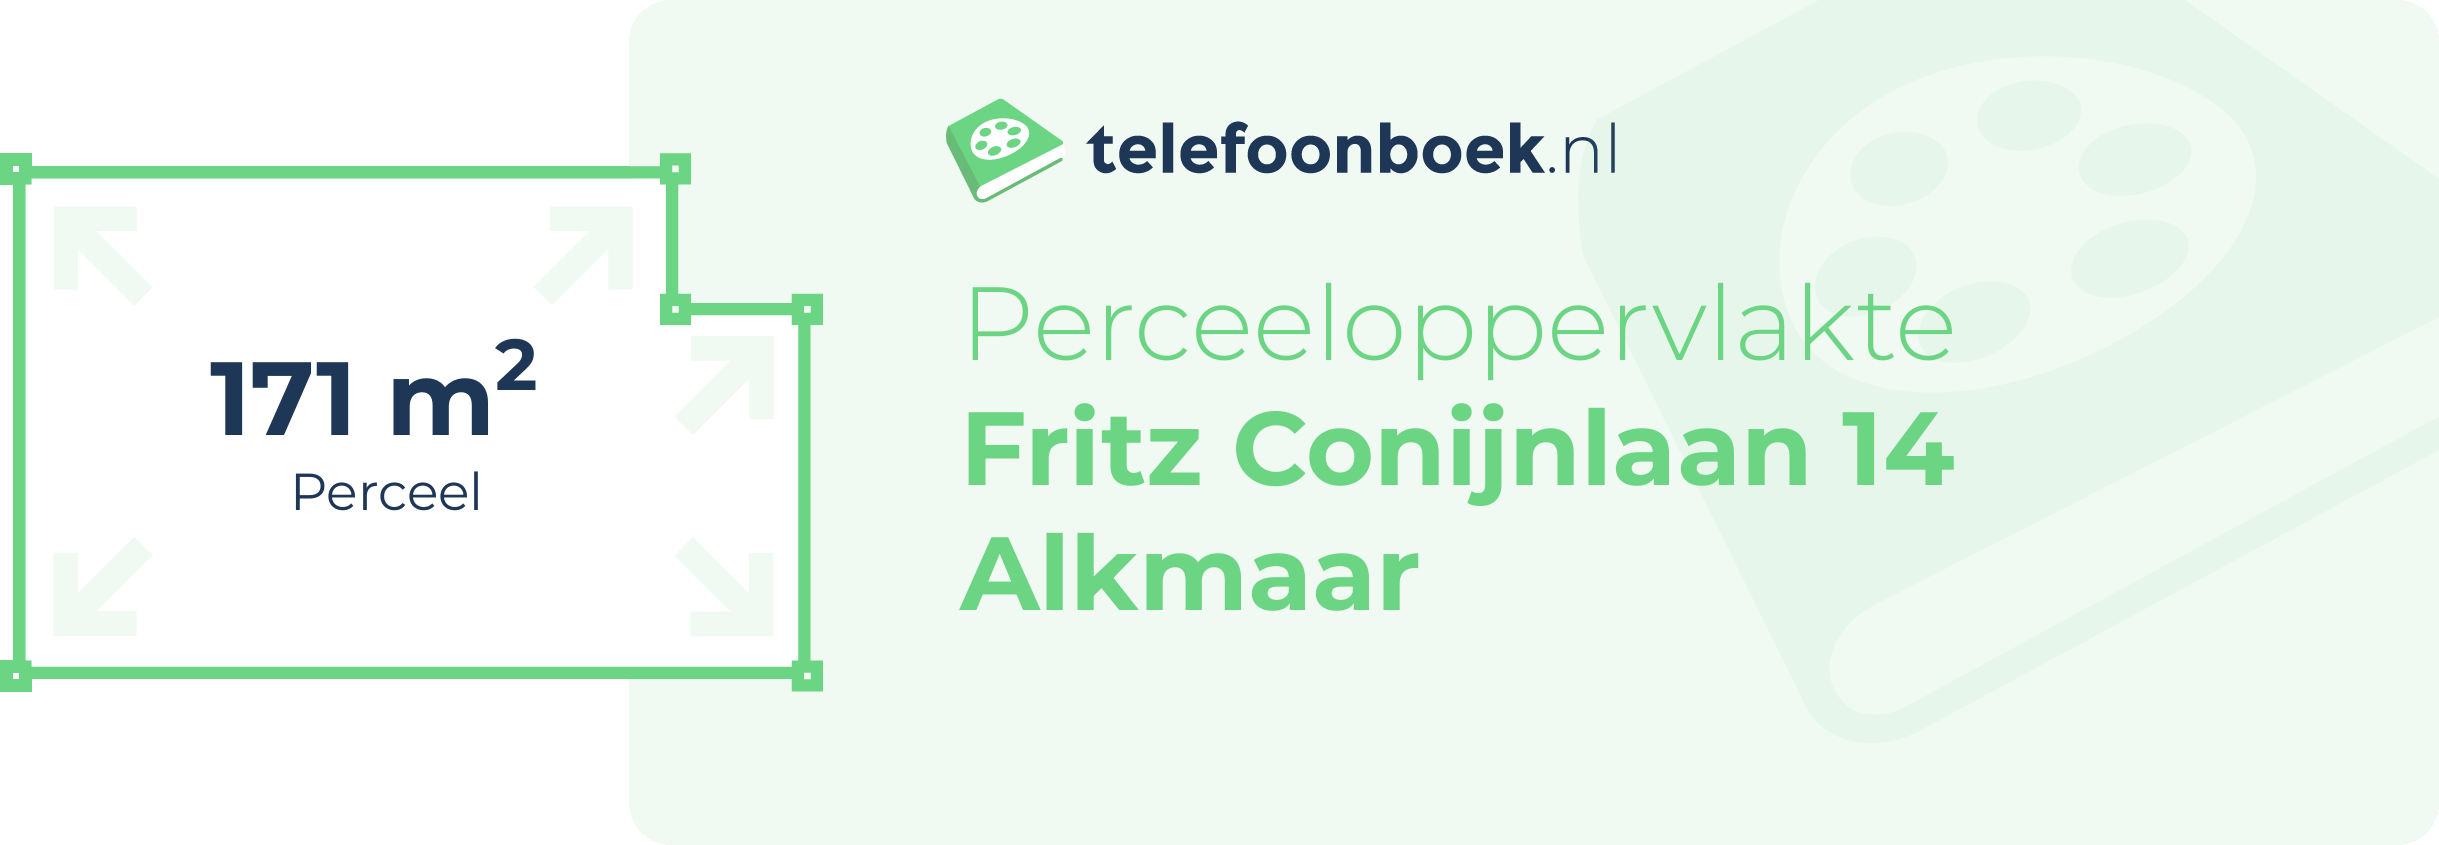 Perceeloppervlakte Fritz Conijnlaan 14 Alkmaar